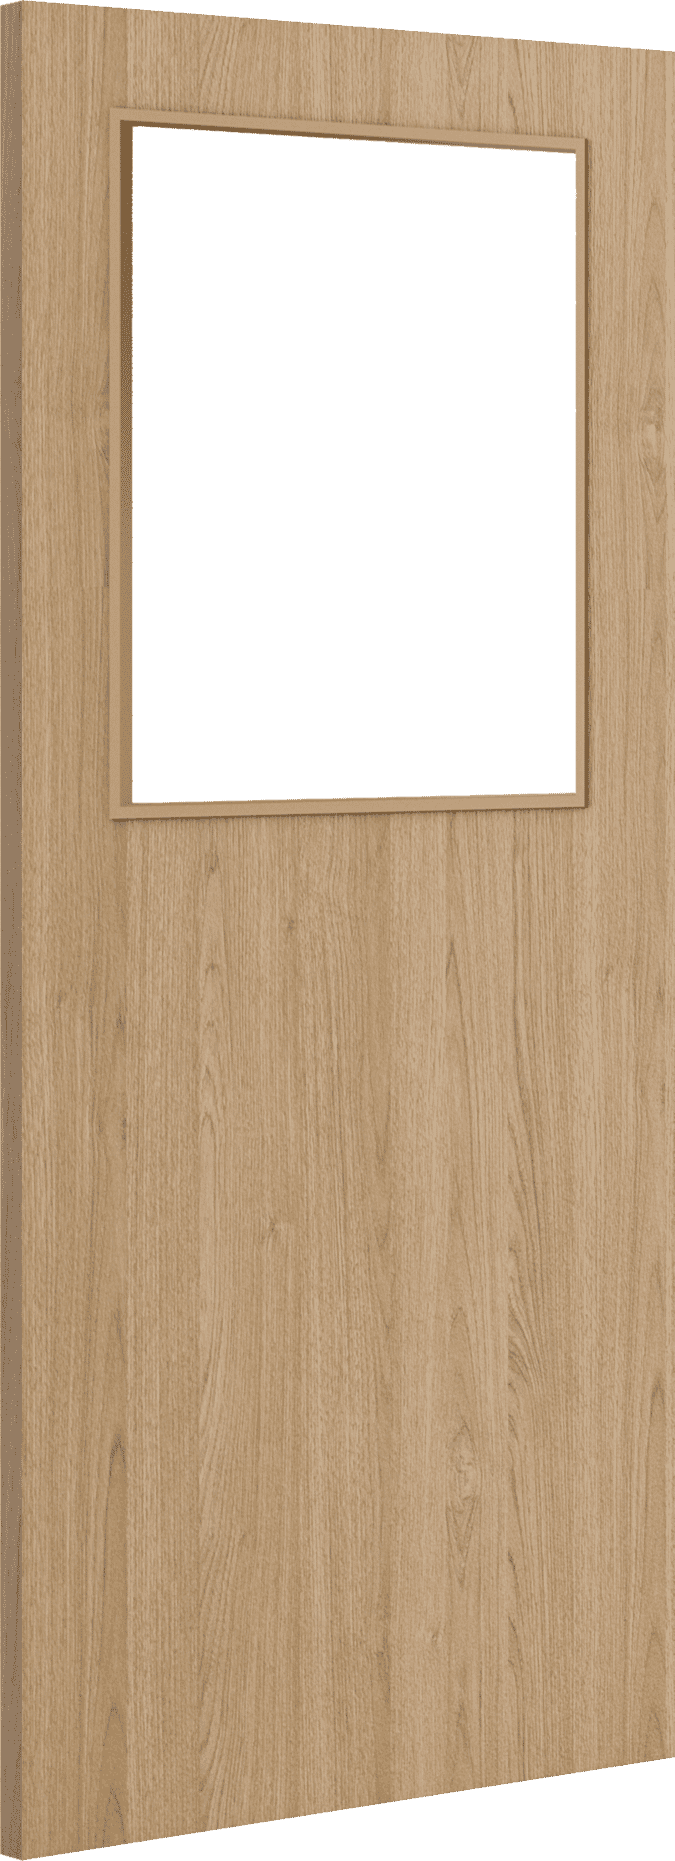 2040mm x 926mm x 54mm Architectural Oak 01 Clear Glazed - Prefinished FD60 Fire Door Blank